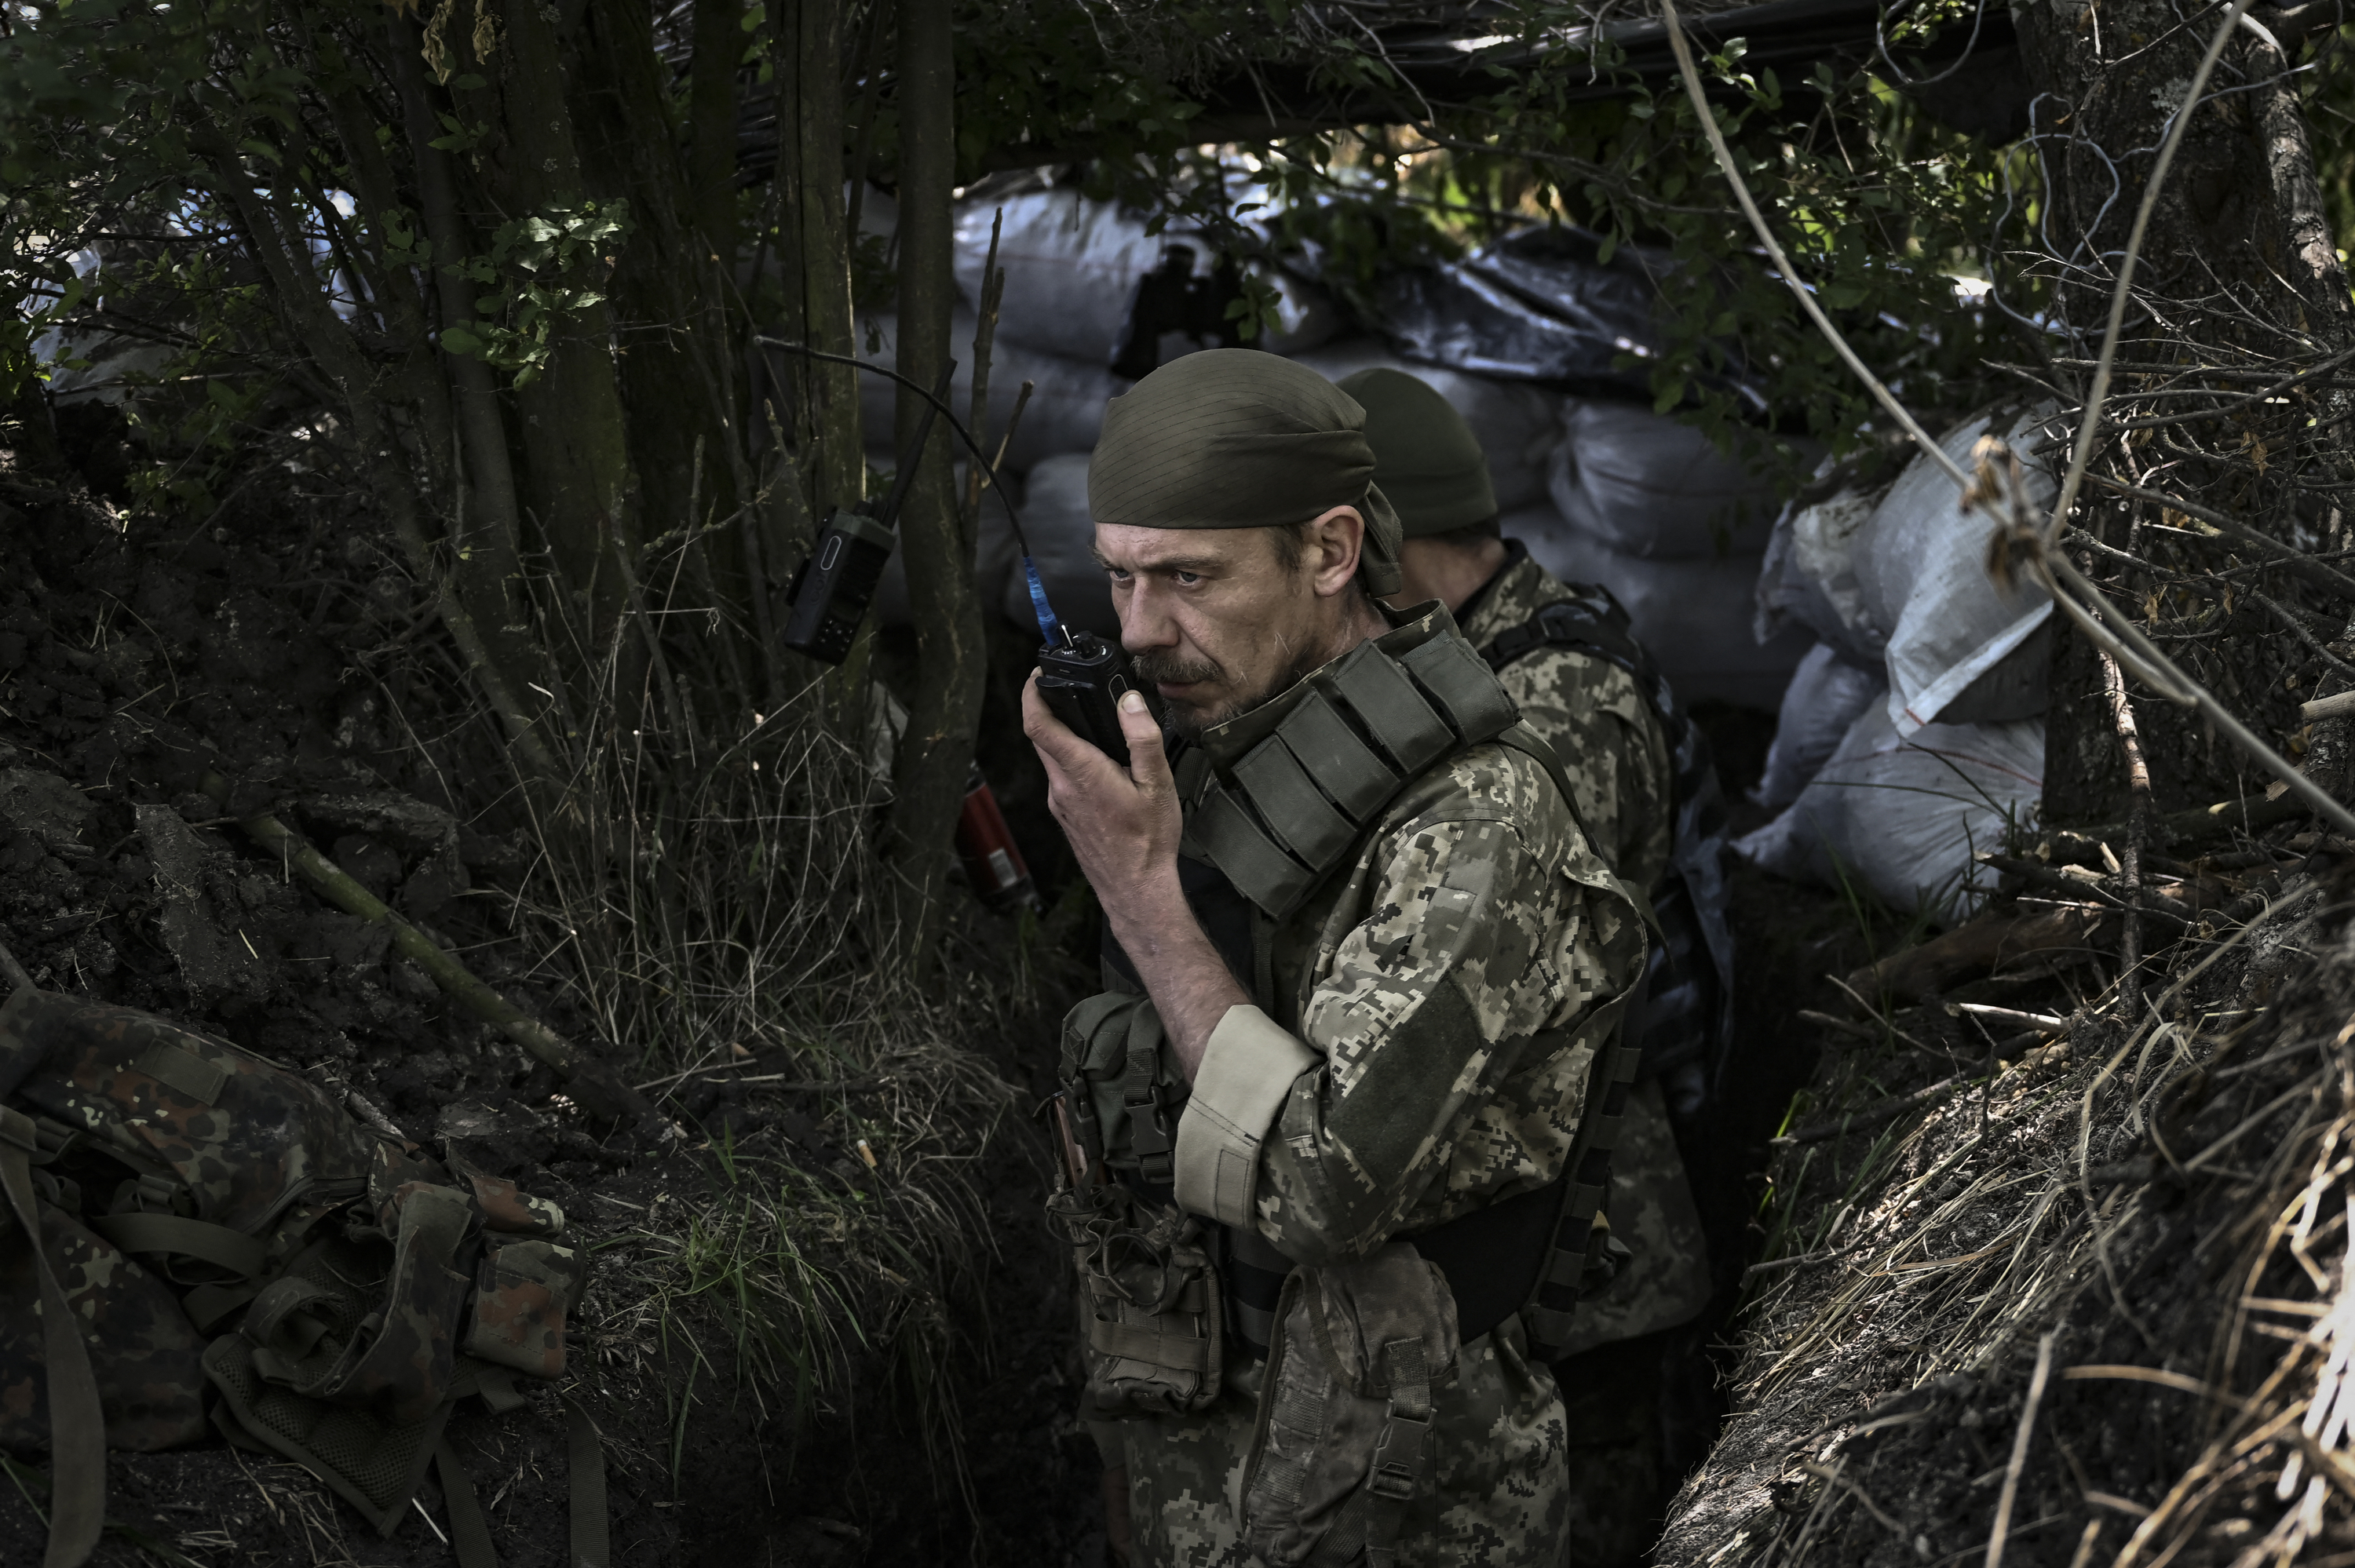 Dezertori în rândurile unităților ucrainene din prima linie. Trupele Kievului înregistrează pierderi mari